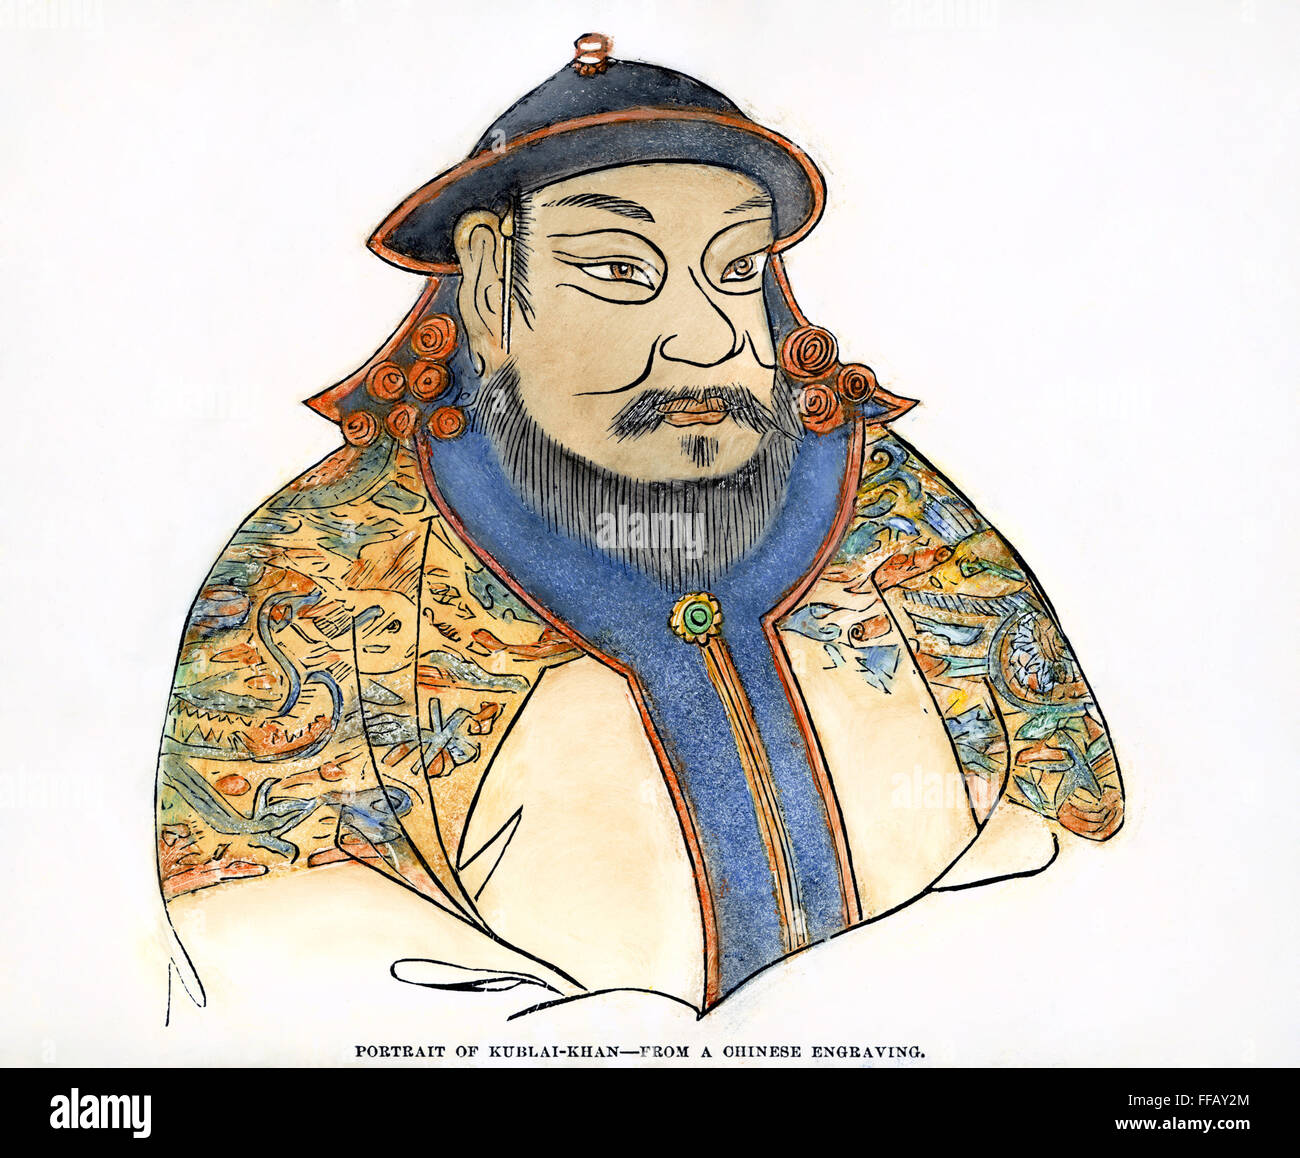 Кублай хана. Амбагай-Хан. Хан Хубилай китайская миниатюра 1294 г. Хубилай Хан портрет. Портрет Император Кублай-Хан.